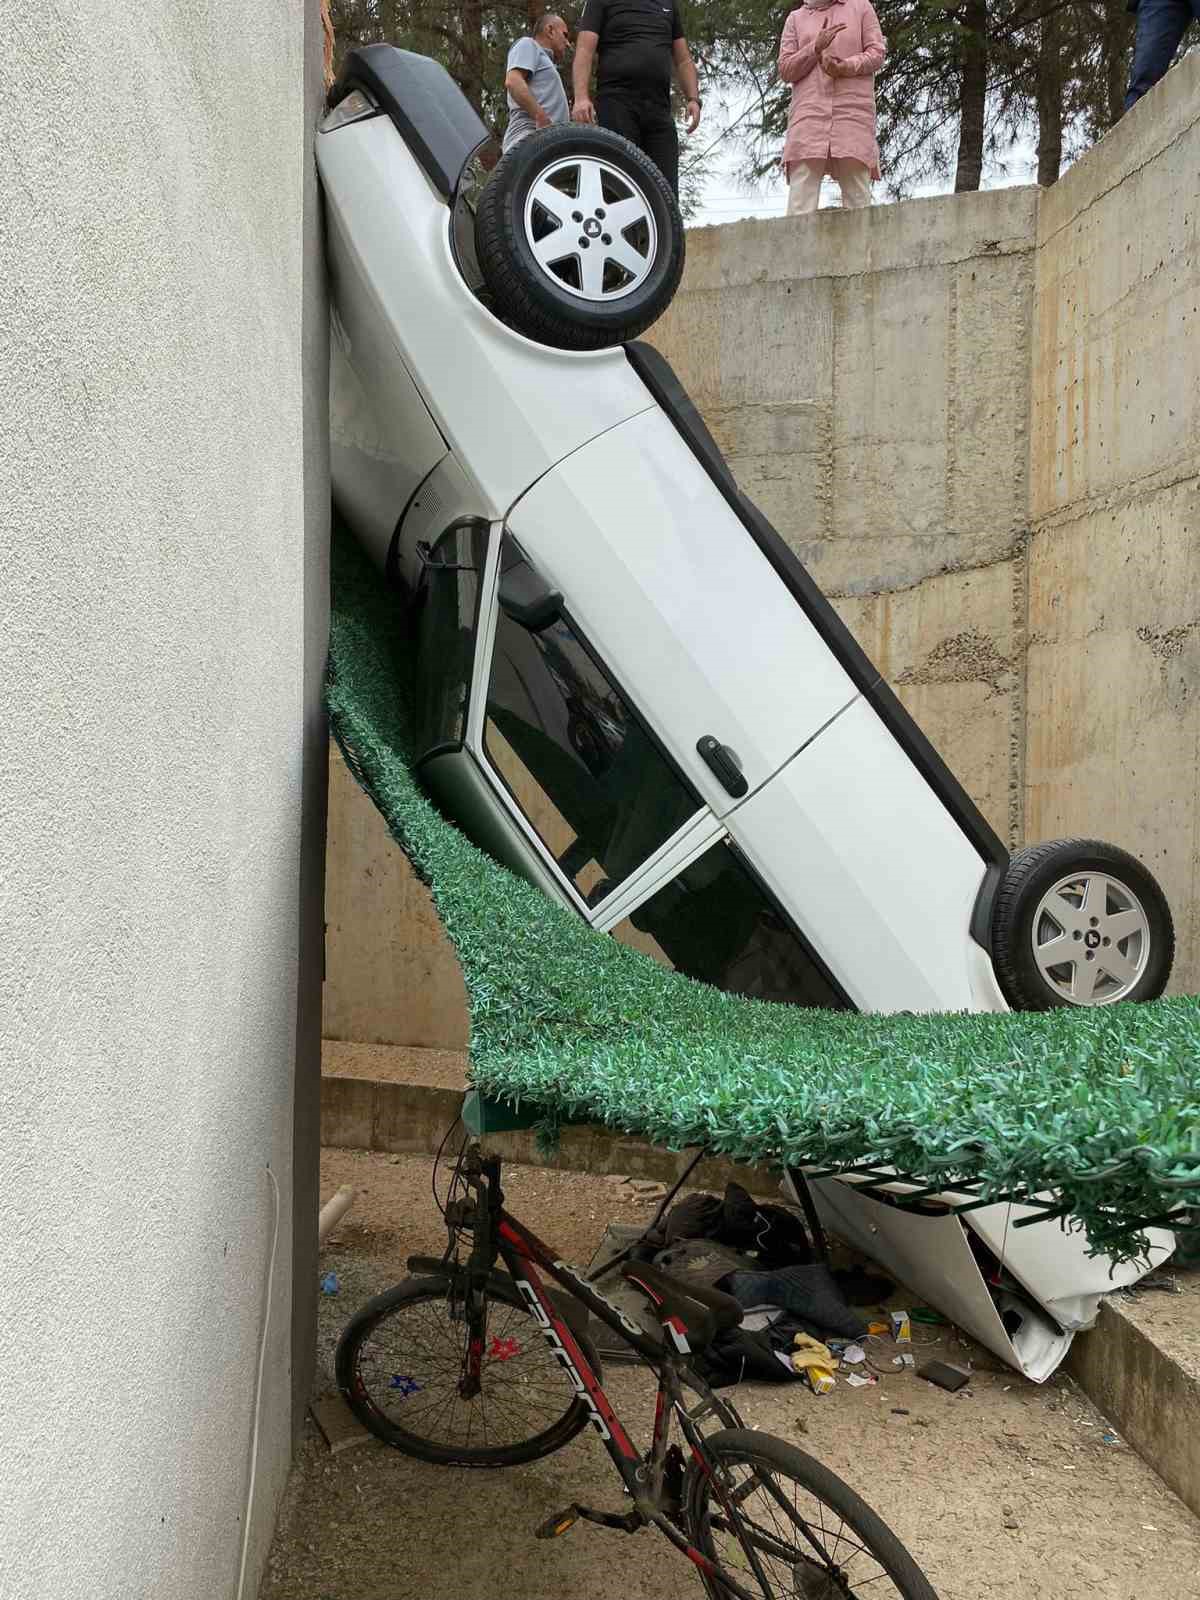 Park ederken el freni çekilmeyen otomobil 5 metre yükseklikten beton zemine düştü
